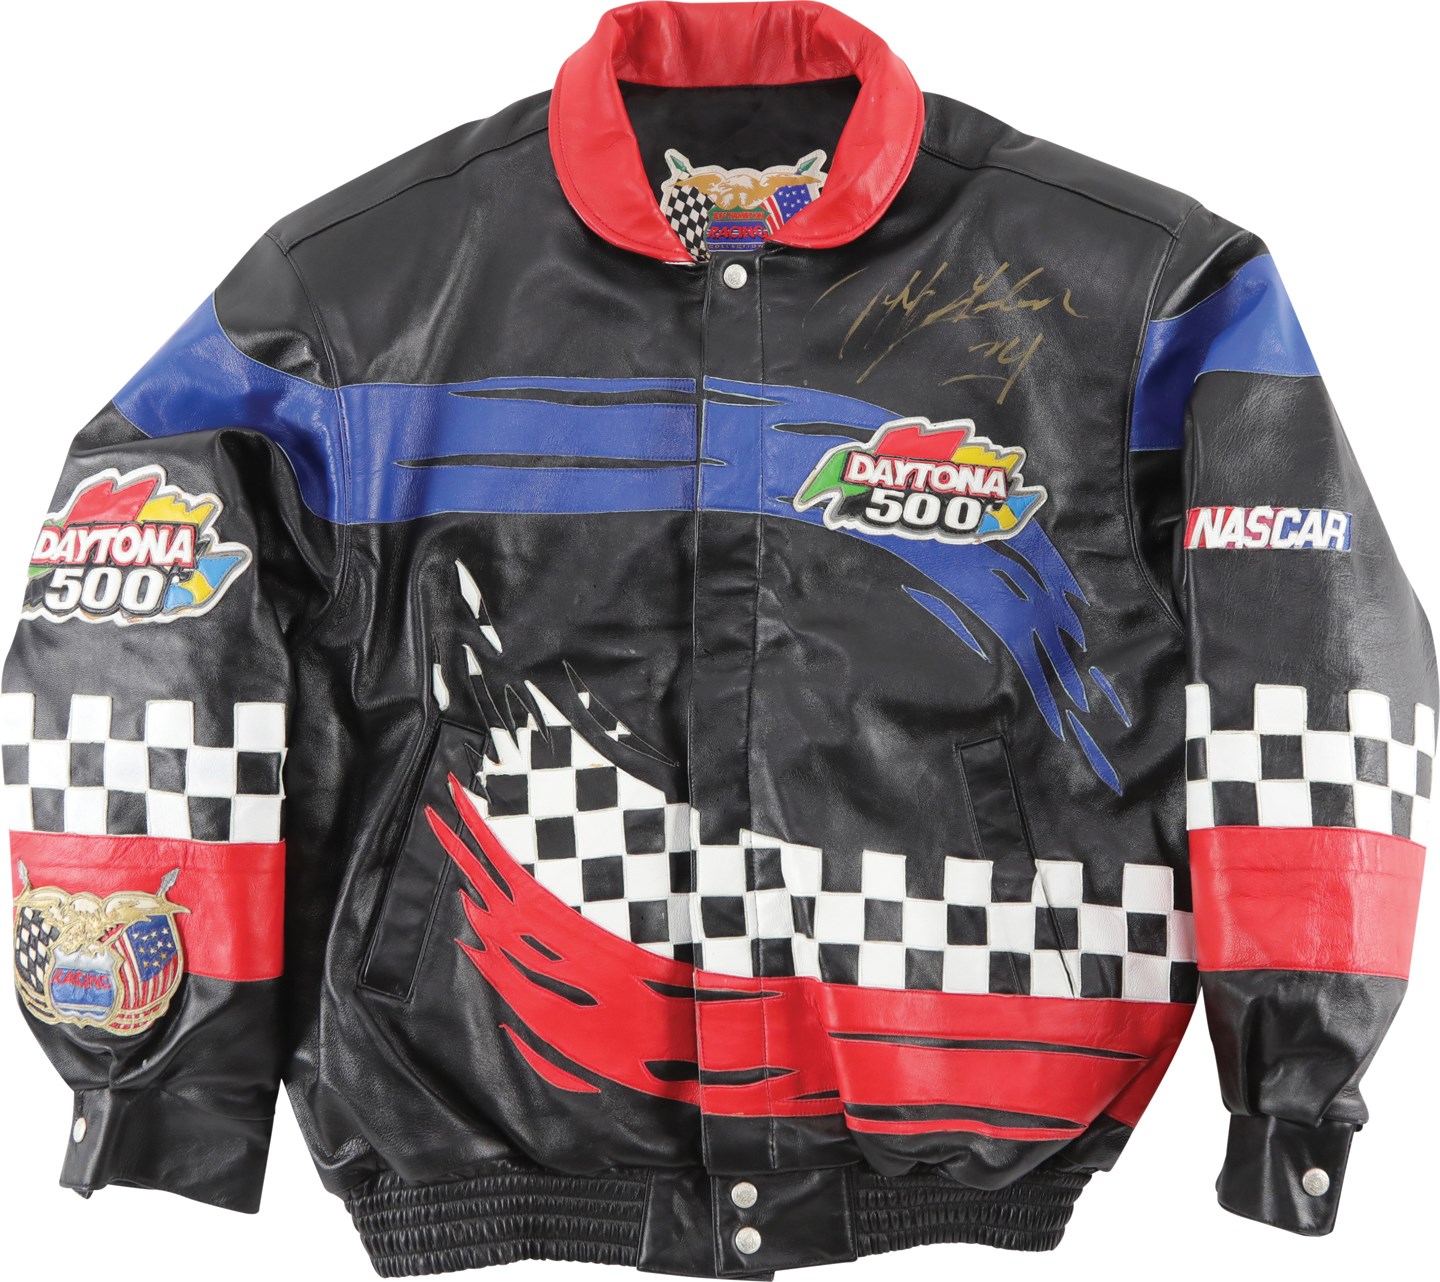 Olympics and All Sports - Jeff Gordon Signed Daytona 500 Jacket by Jeff Hamilton